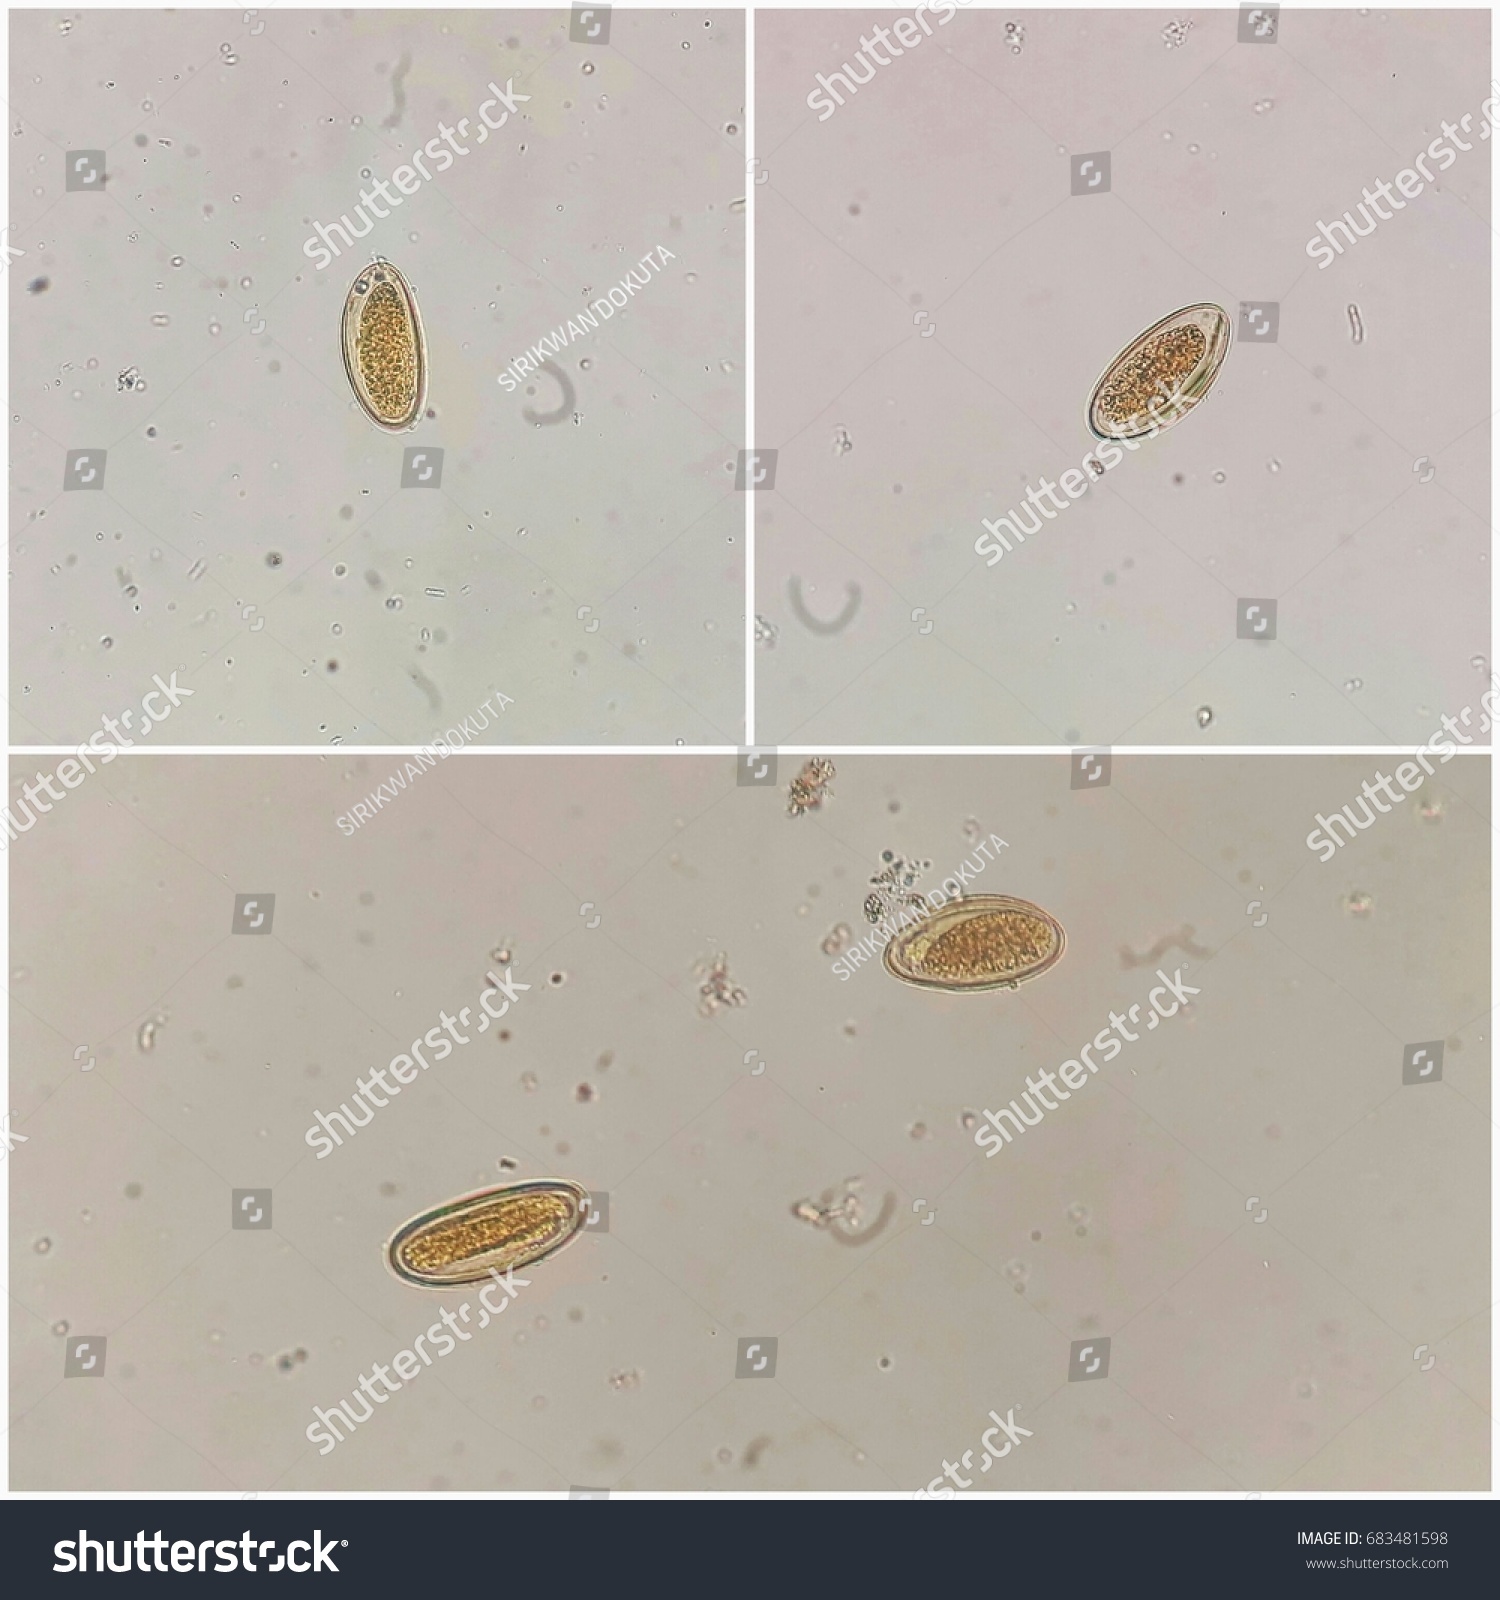 enterobius vermicularis in stool bacterii multirezistente